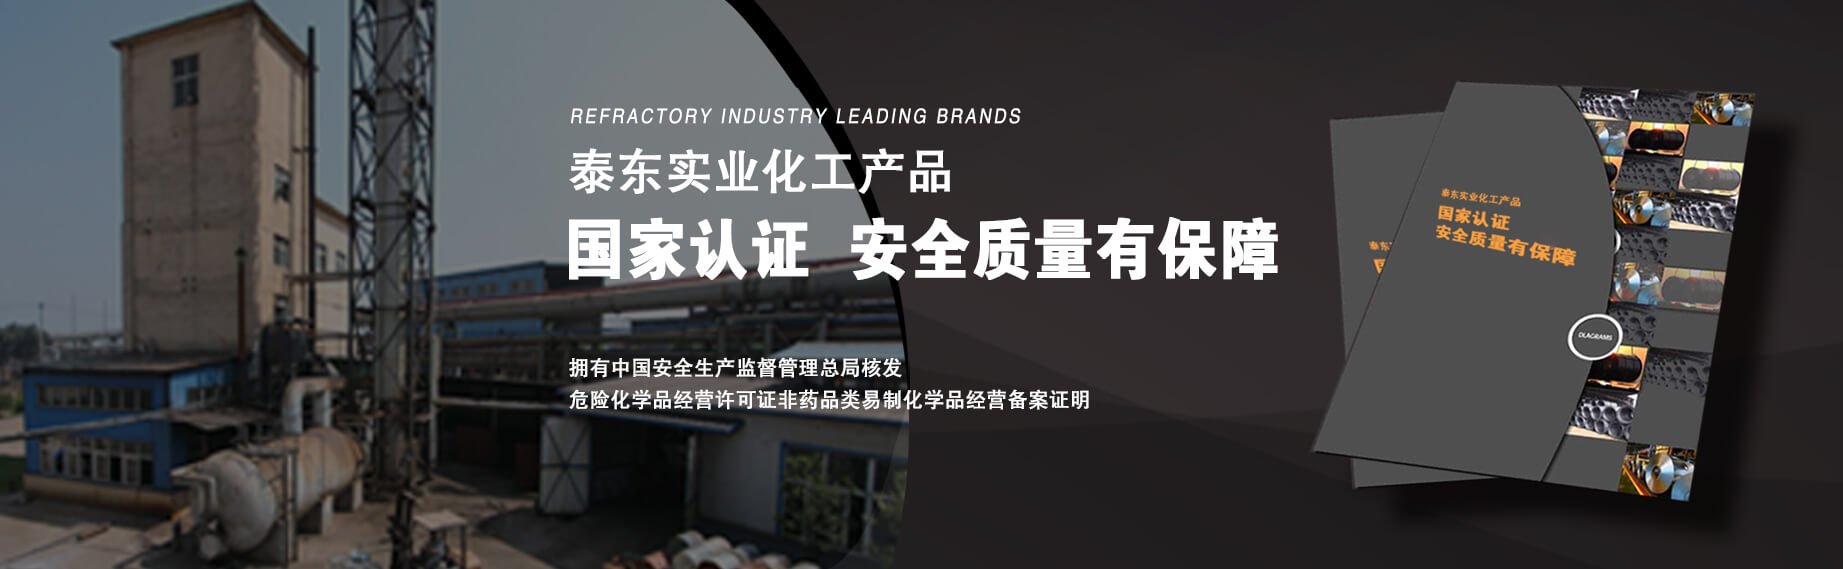 关于当前产品7123开元app下载·(中国)官方网站的成功案例等相关图片